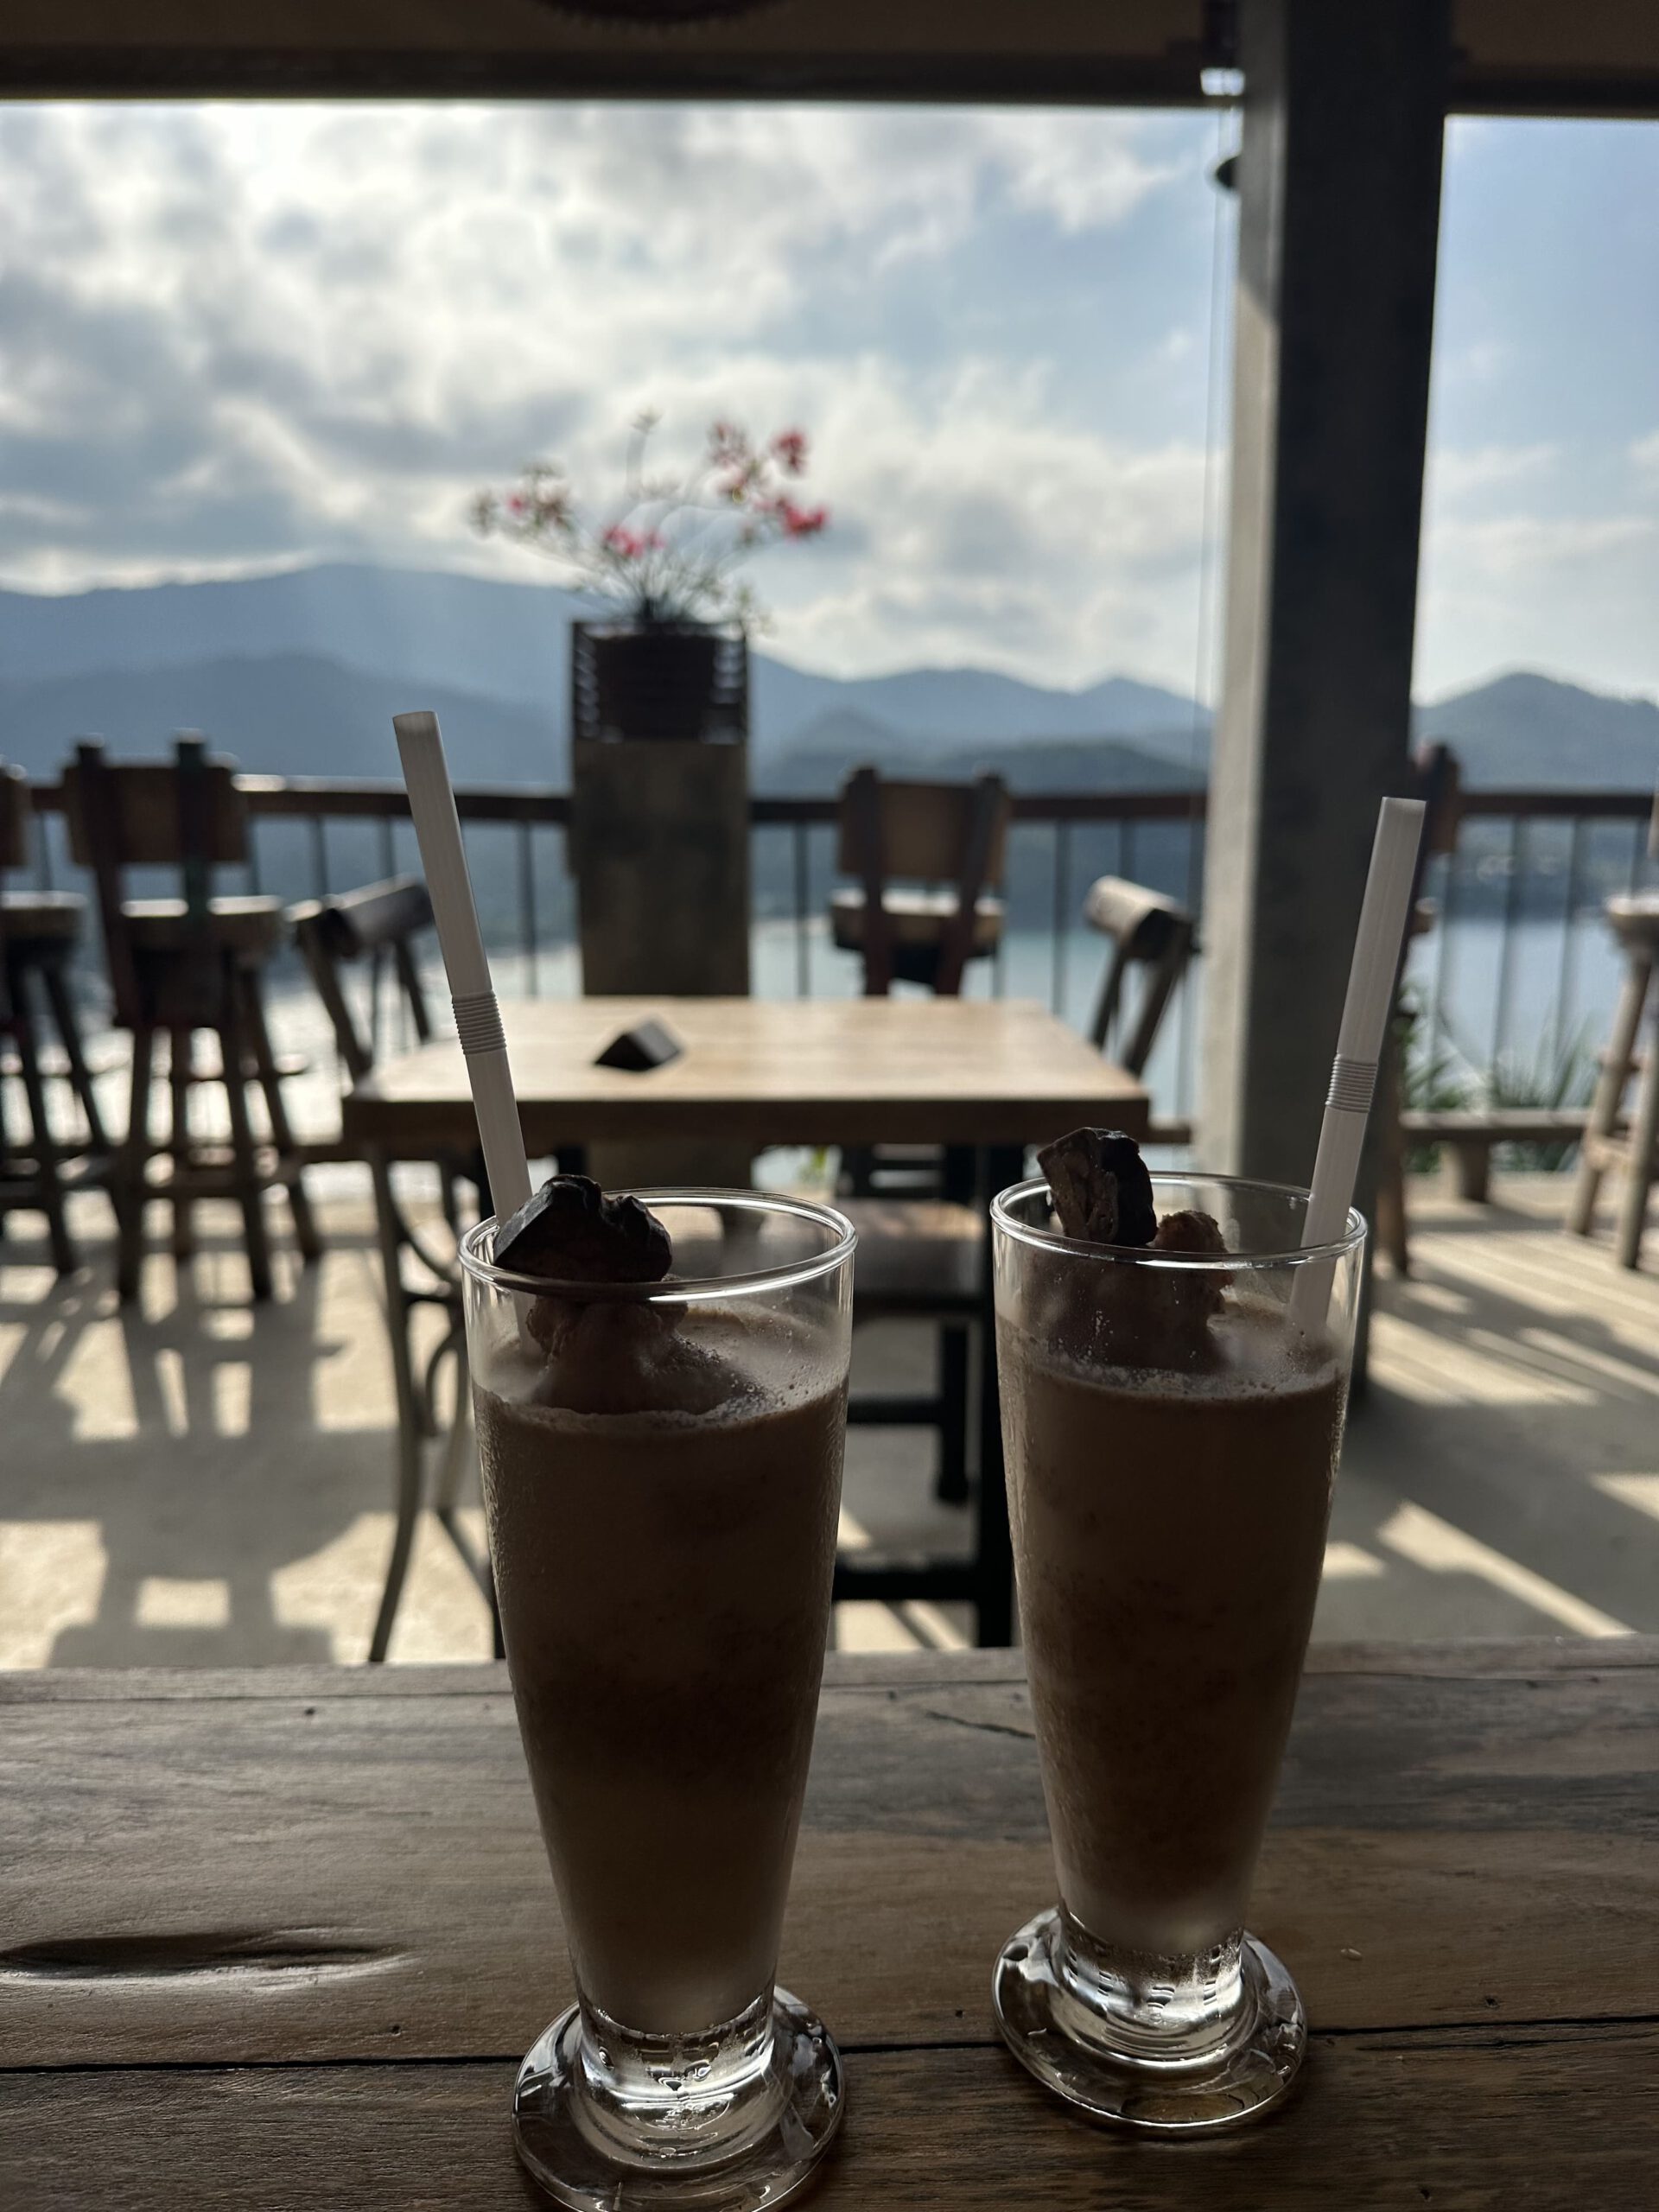 Lokal mit 2 Schokoladen-Milchshakes auf dem Tisch mit grandioser Aussicht über die darunterliegende Bucht